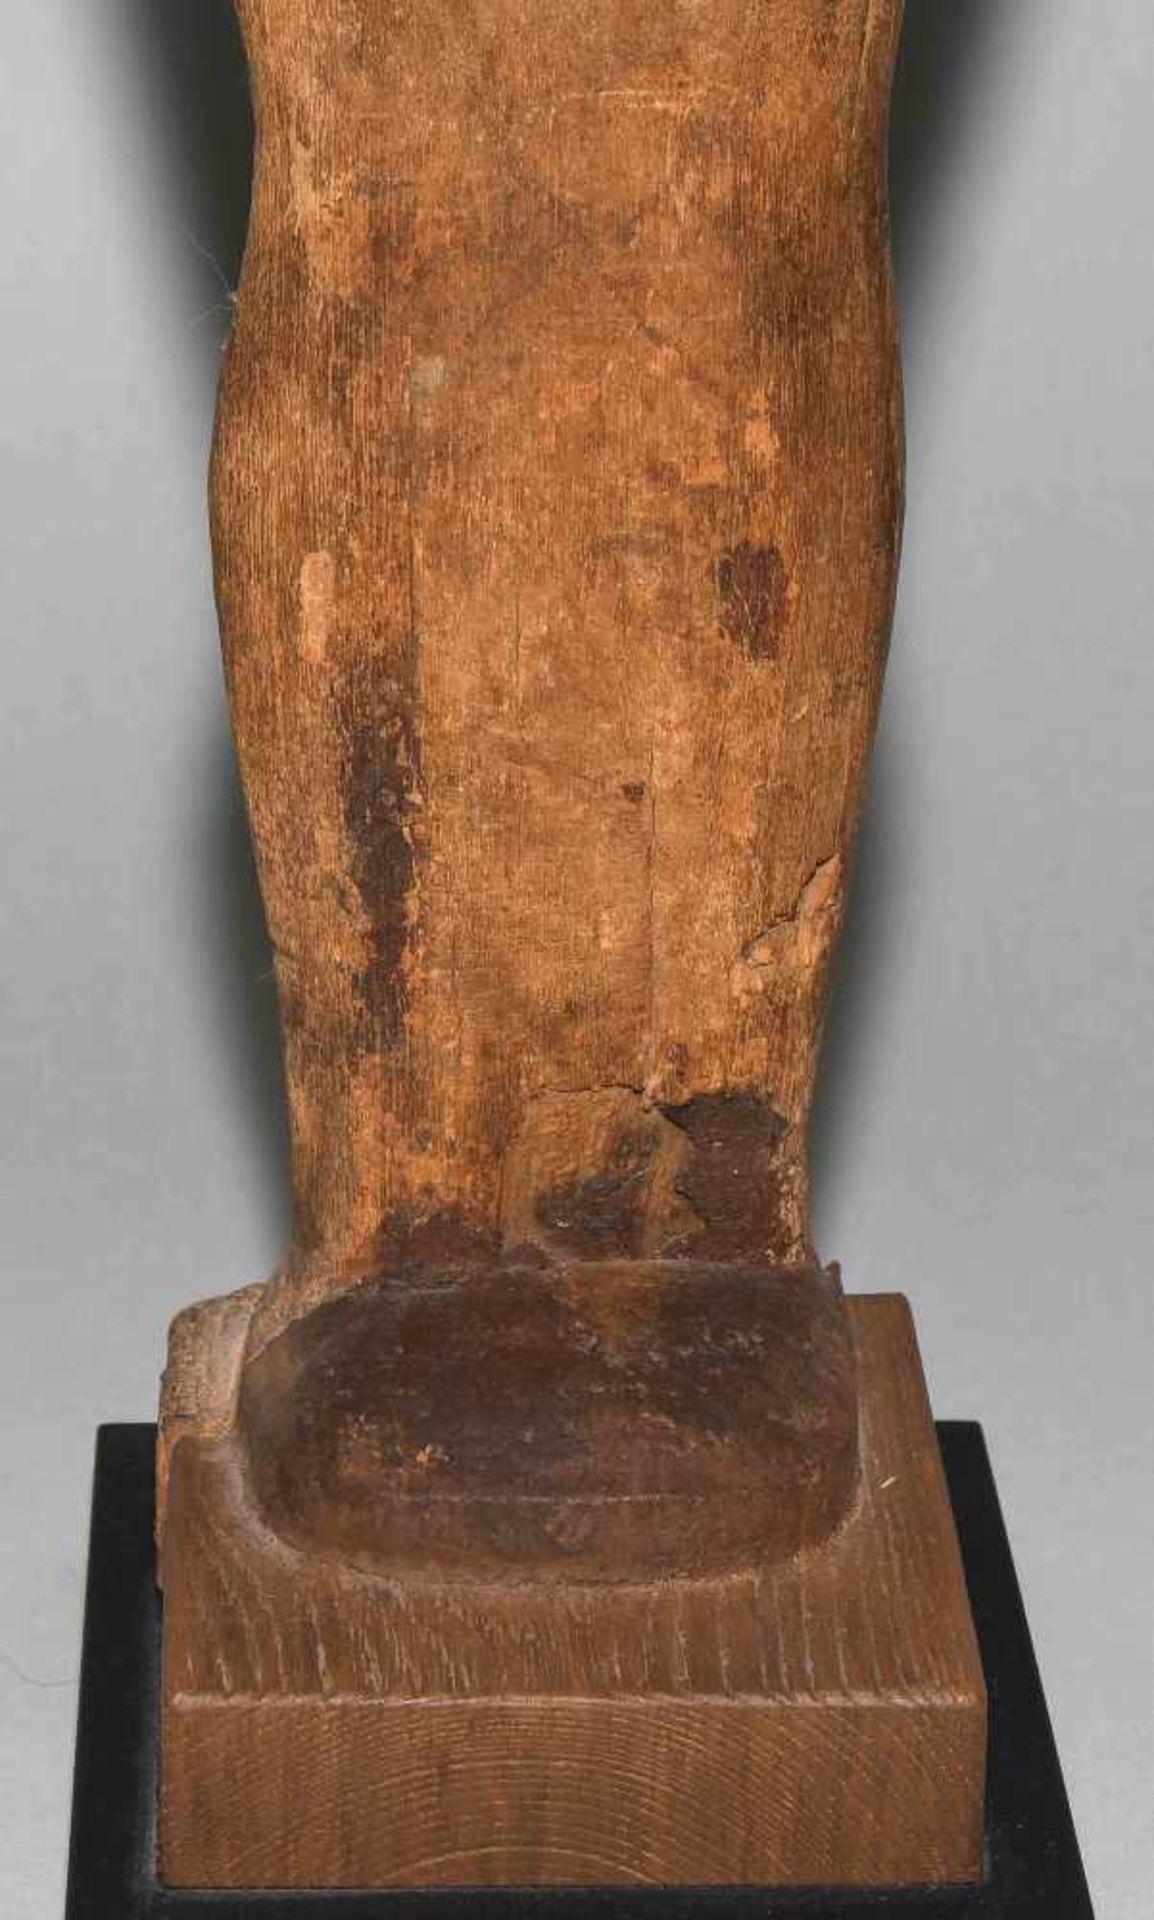 Ptah-Sokar-OsirisAegypten, Spätzeit, ca. 350 v.C. Holz mit Resten von Bemalung und Vergoldung. - Bild 9 aus 10